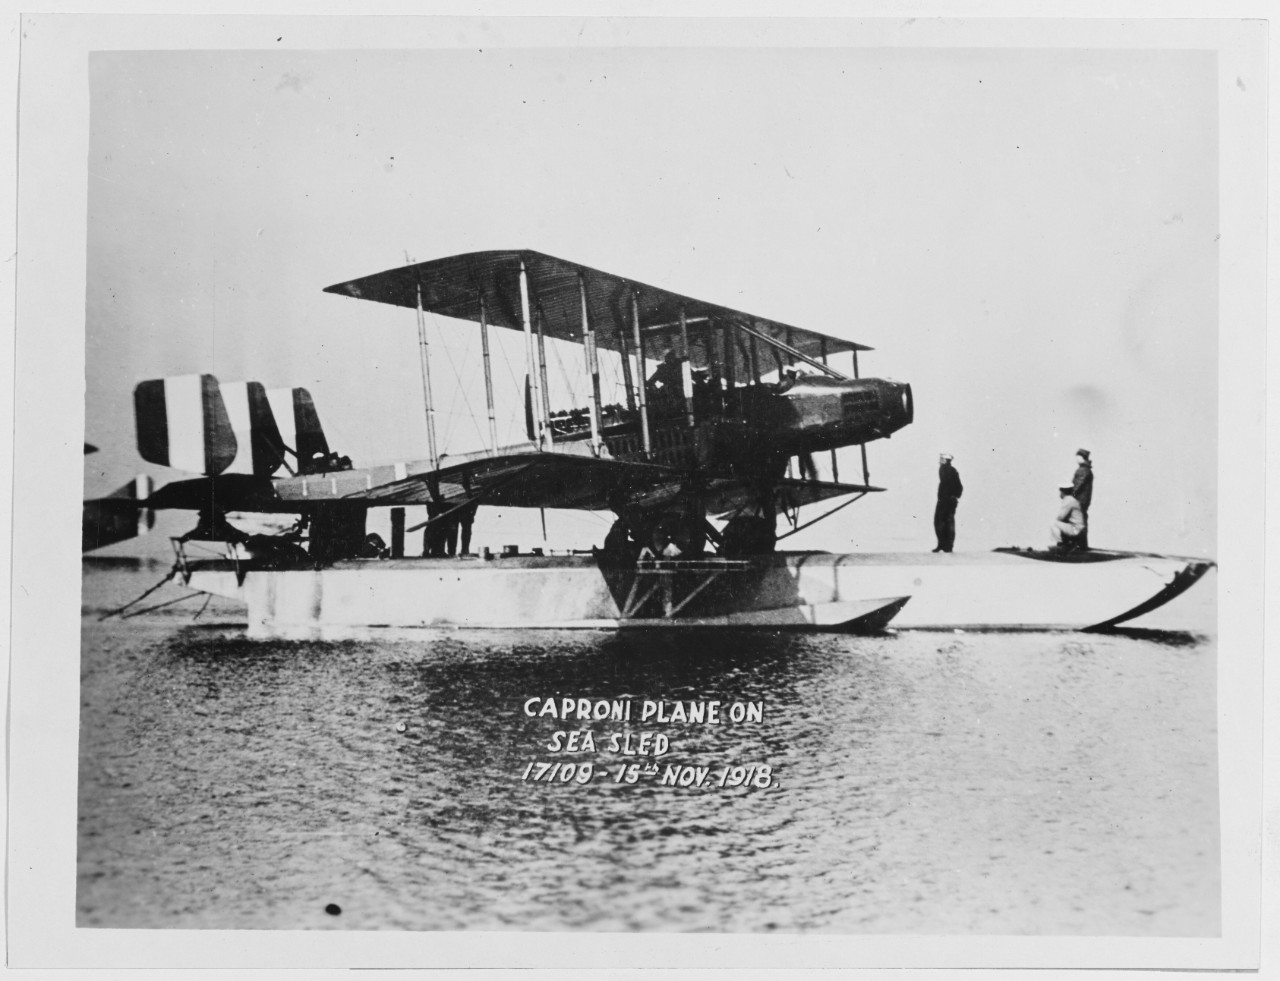 Caproni Plane on Sea Sled. 17109. November 15, 1918